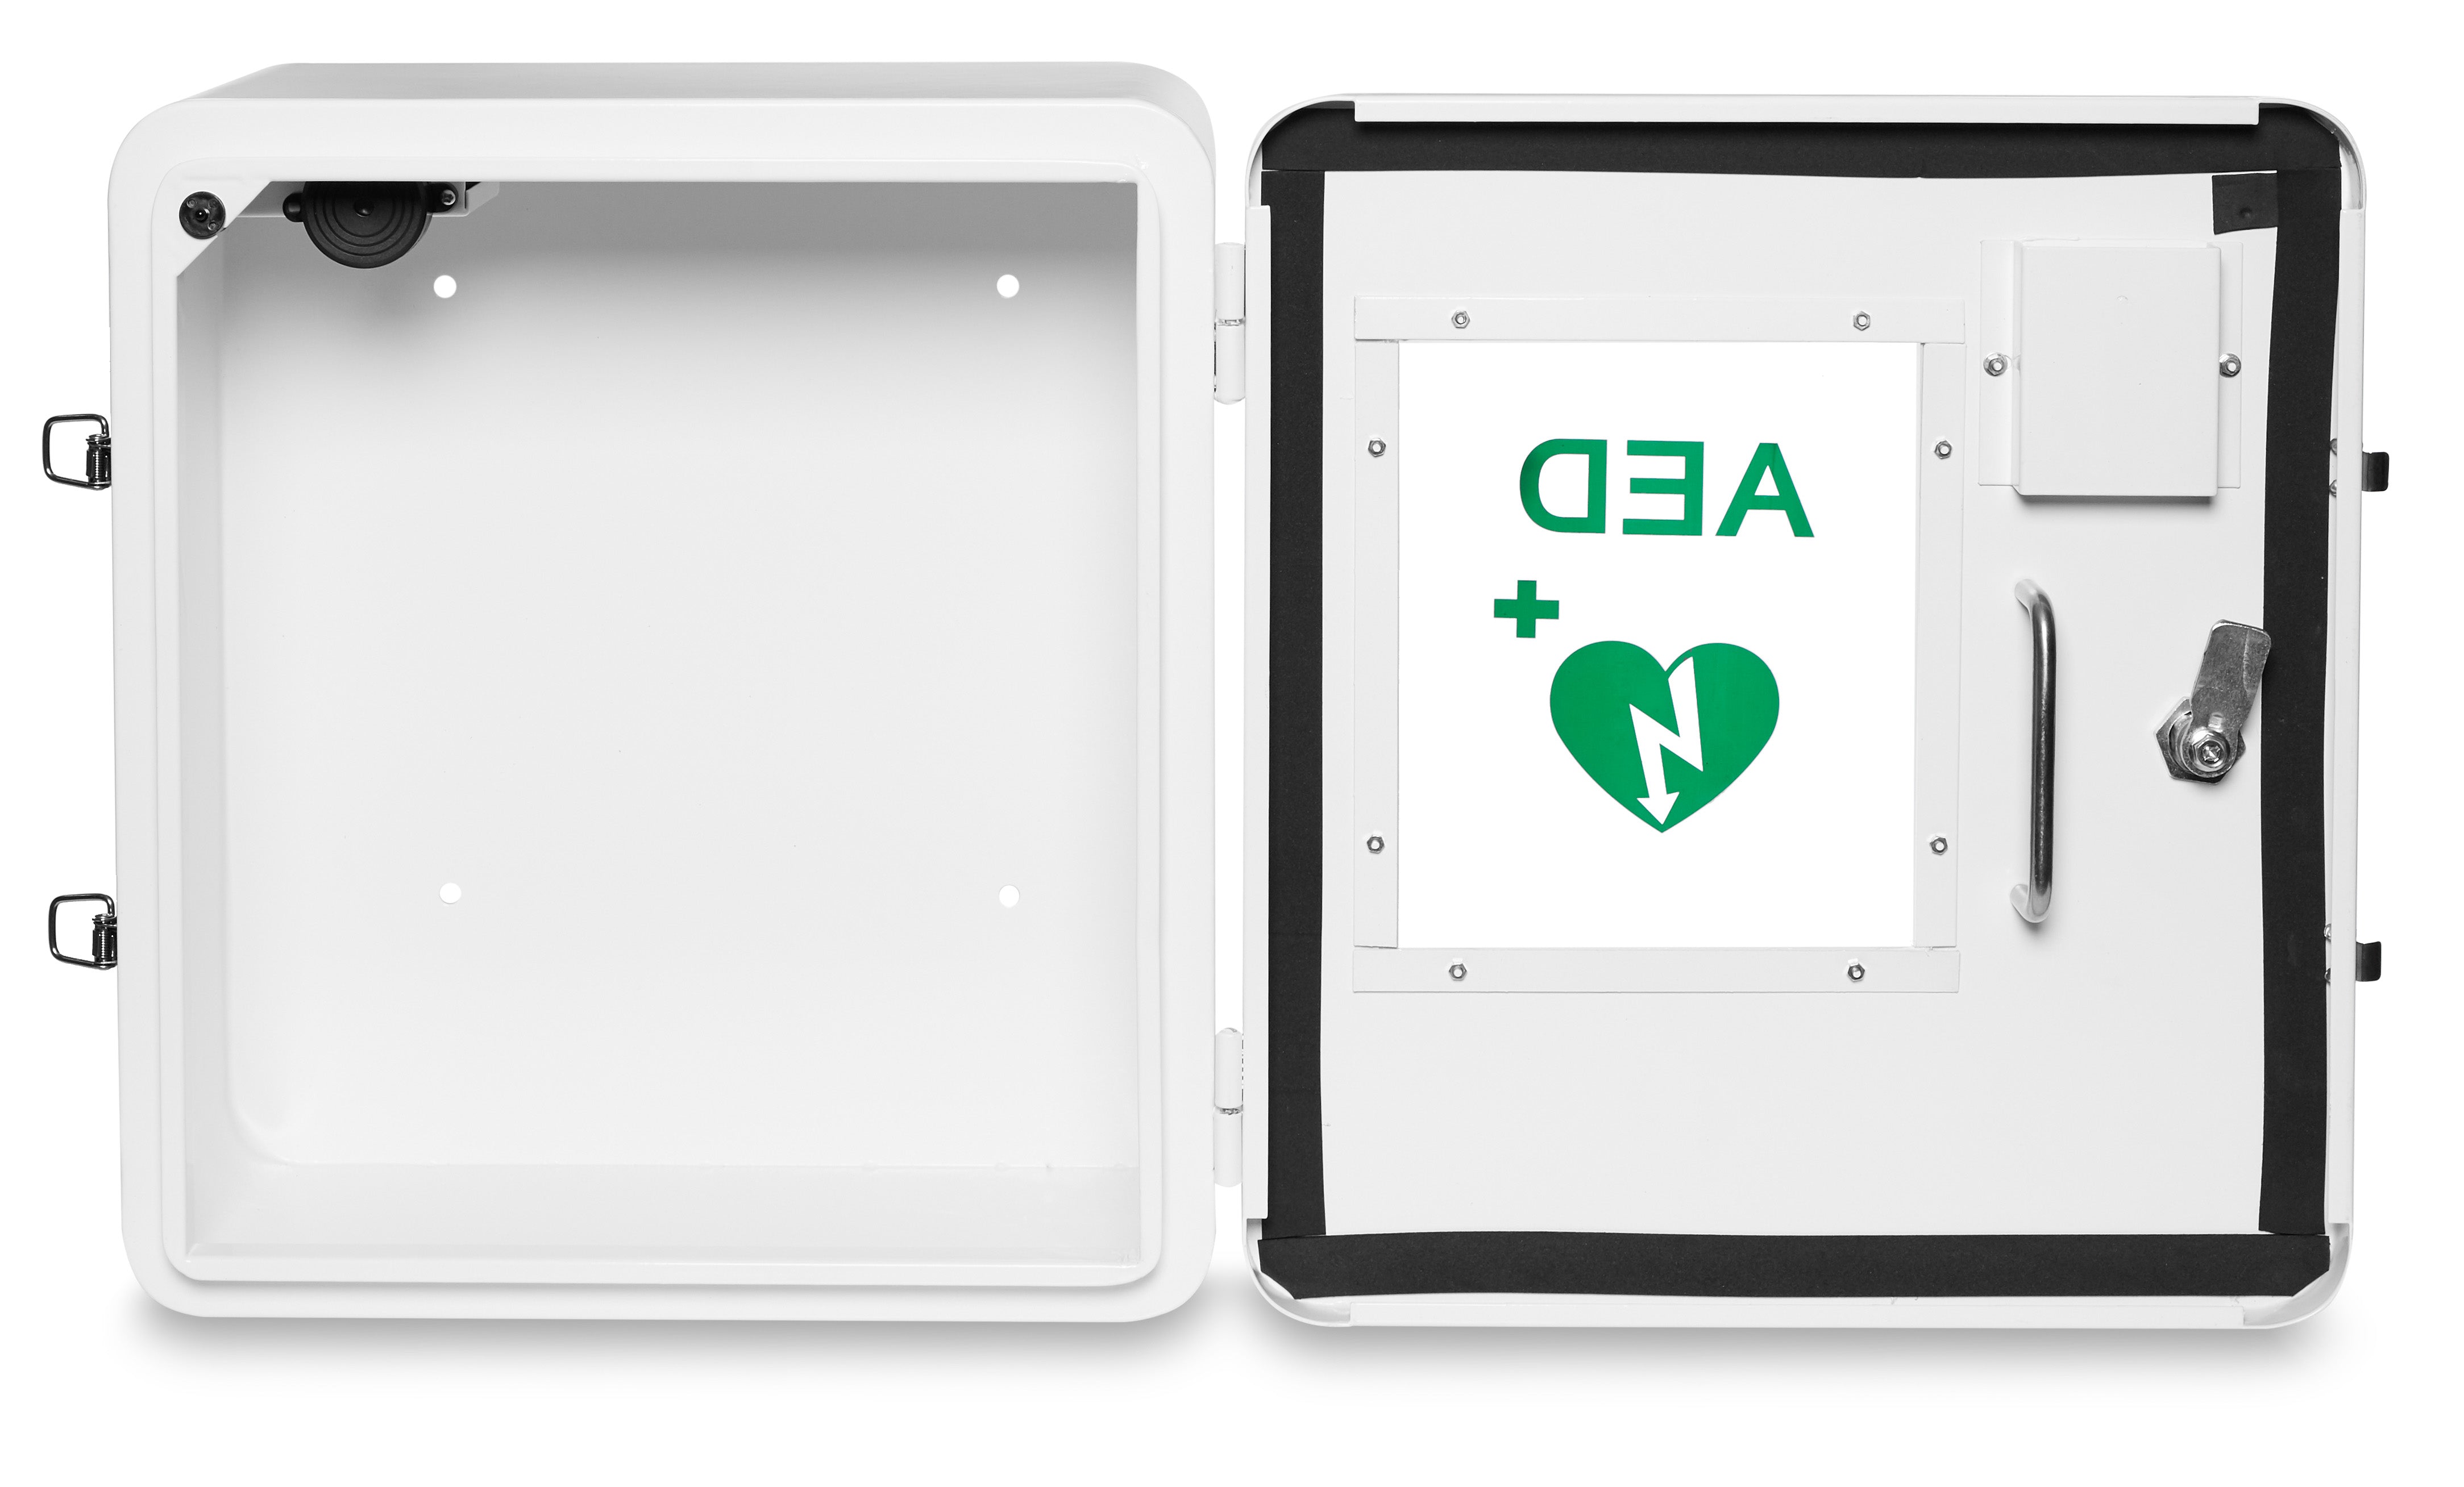 Break Glass Outdoor Defibrillator Cabinet